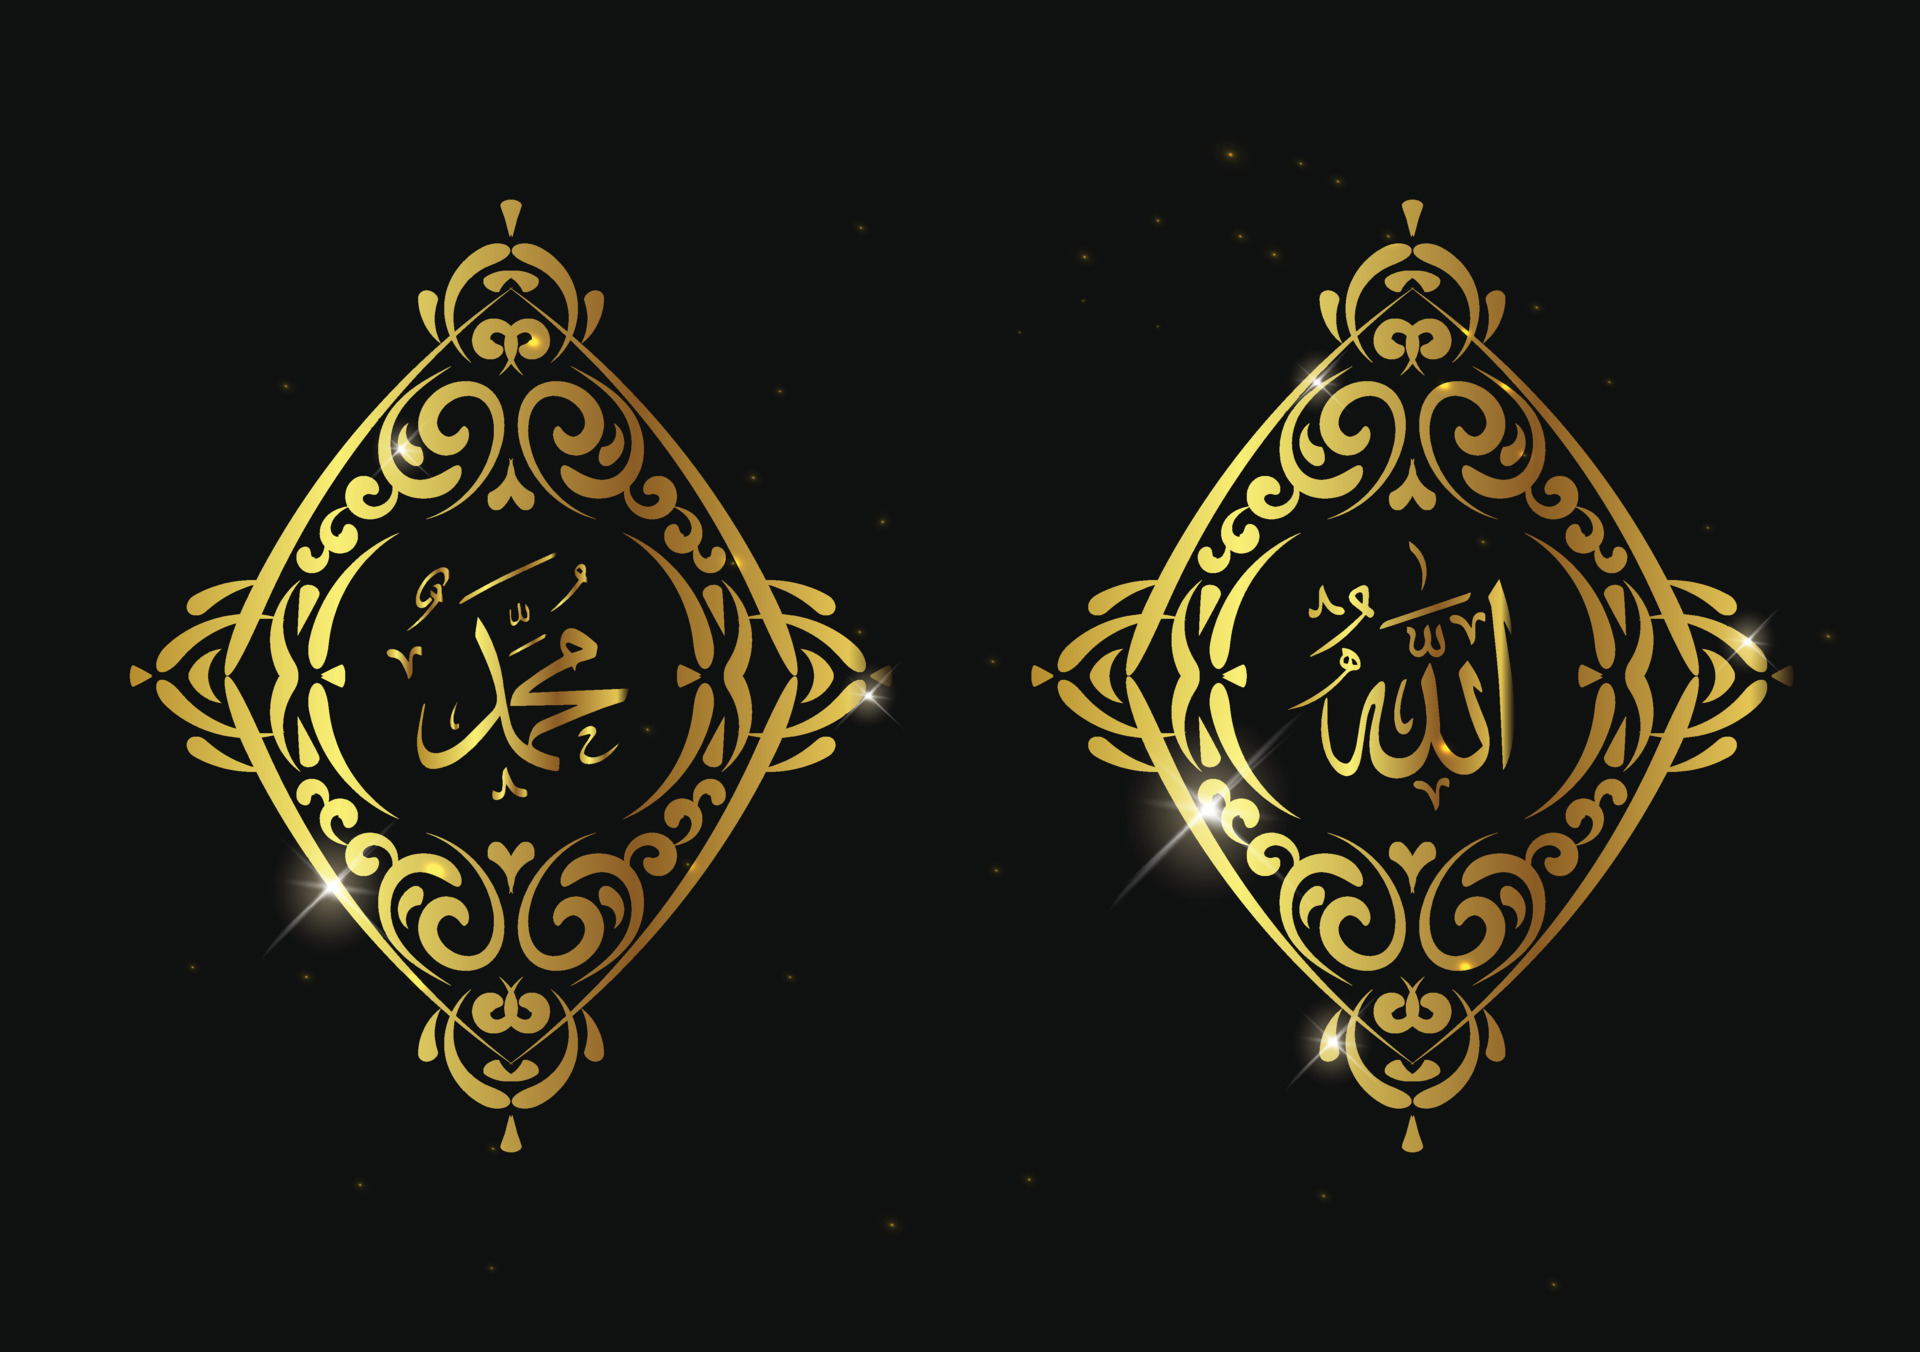 allah muhammad arabische kalligrafie mit retro-rahmen und goldfarbe.  islamische arabische kalligrafie für dekoration, banner, vorlage, karte,  layout. 8484460 Vektor Kunst bei Vecteezy